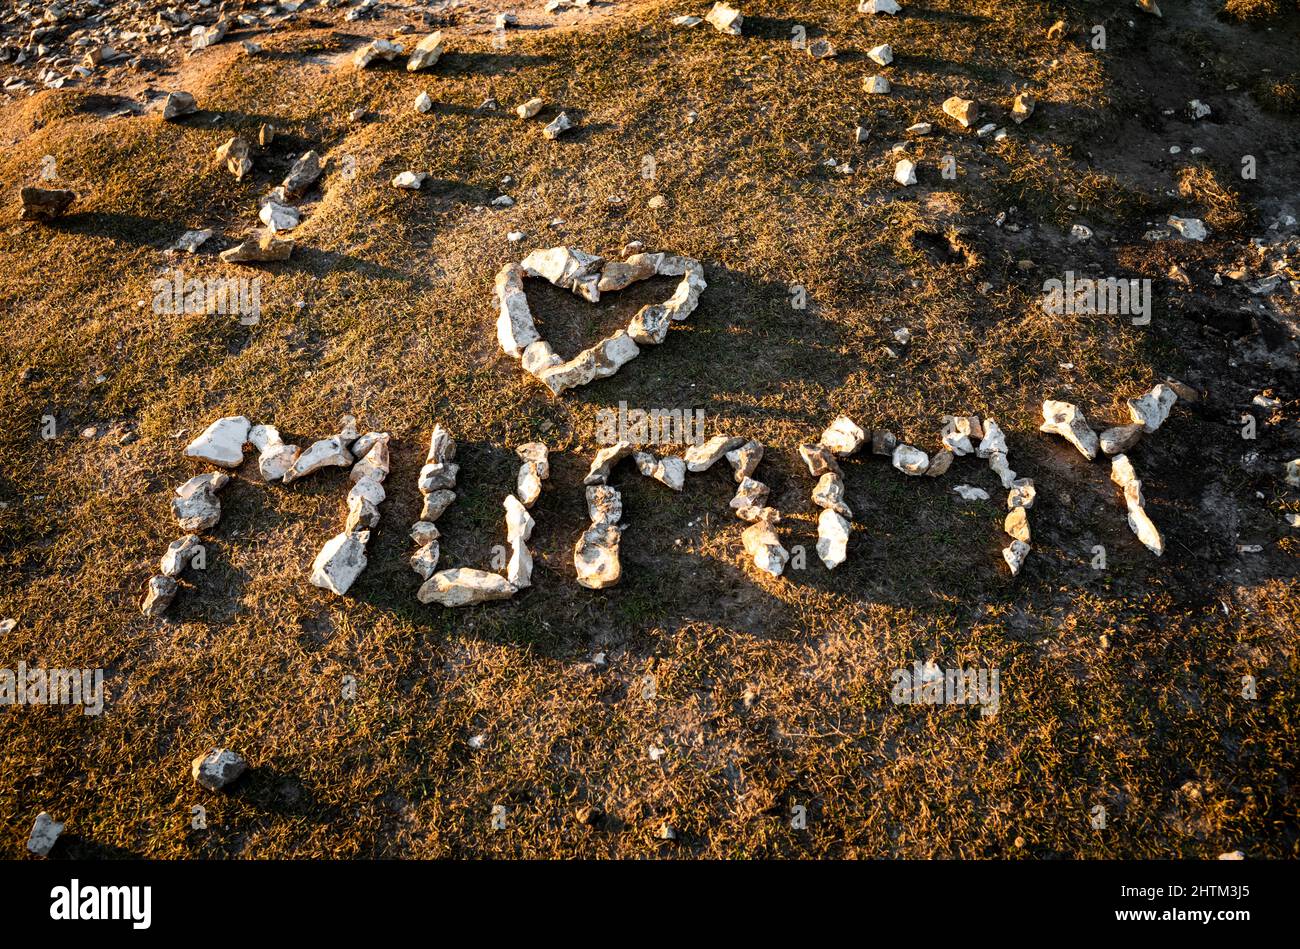 Le mot « Mummy » et une forme de coeur sont faits de galets de flan sur le promontoire de Birling Gap, un site de beauté naturelle sur la côte sud de l'Angleterre Banque D'Images